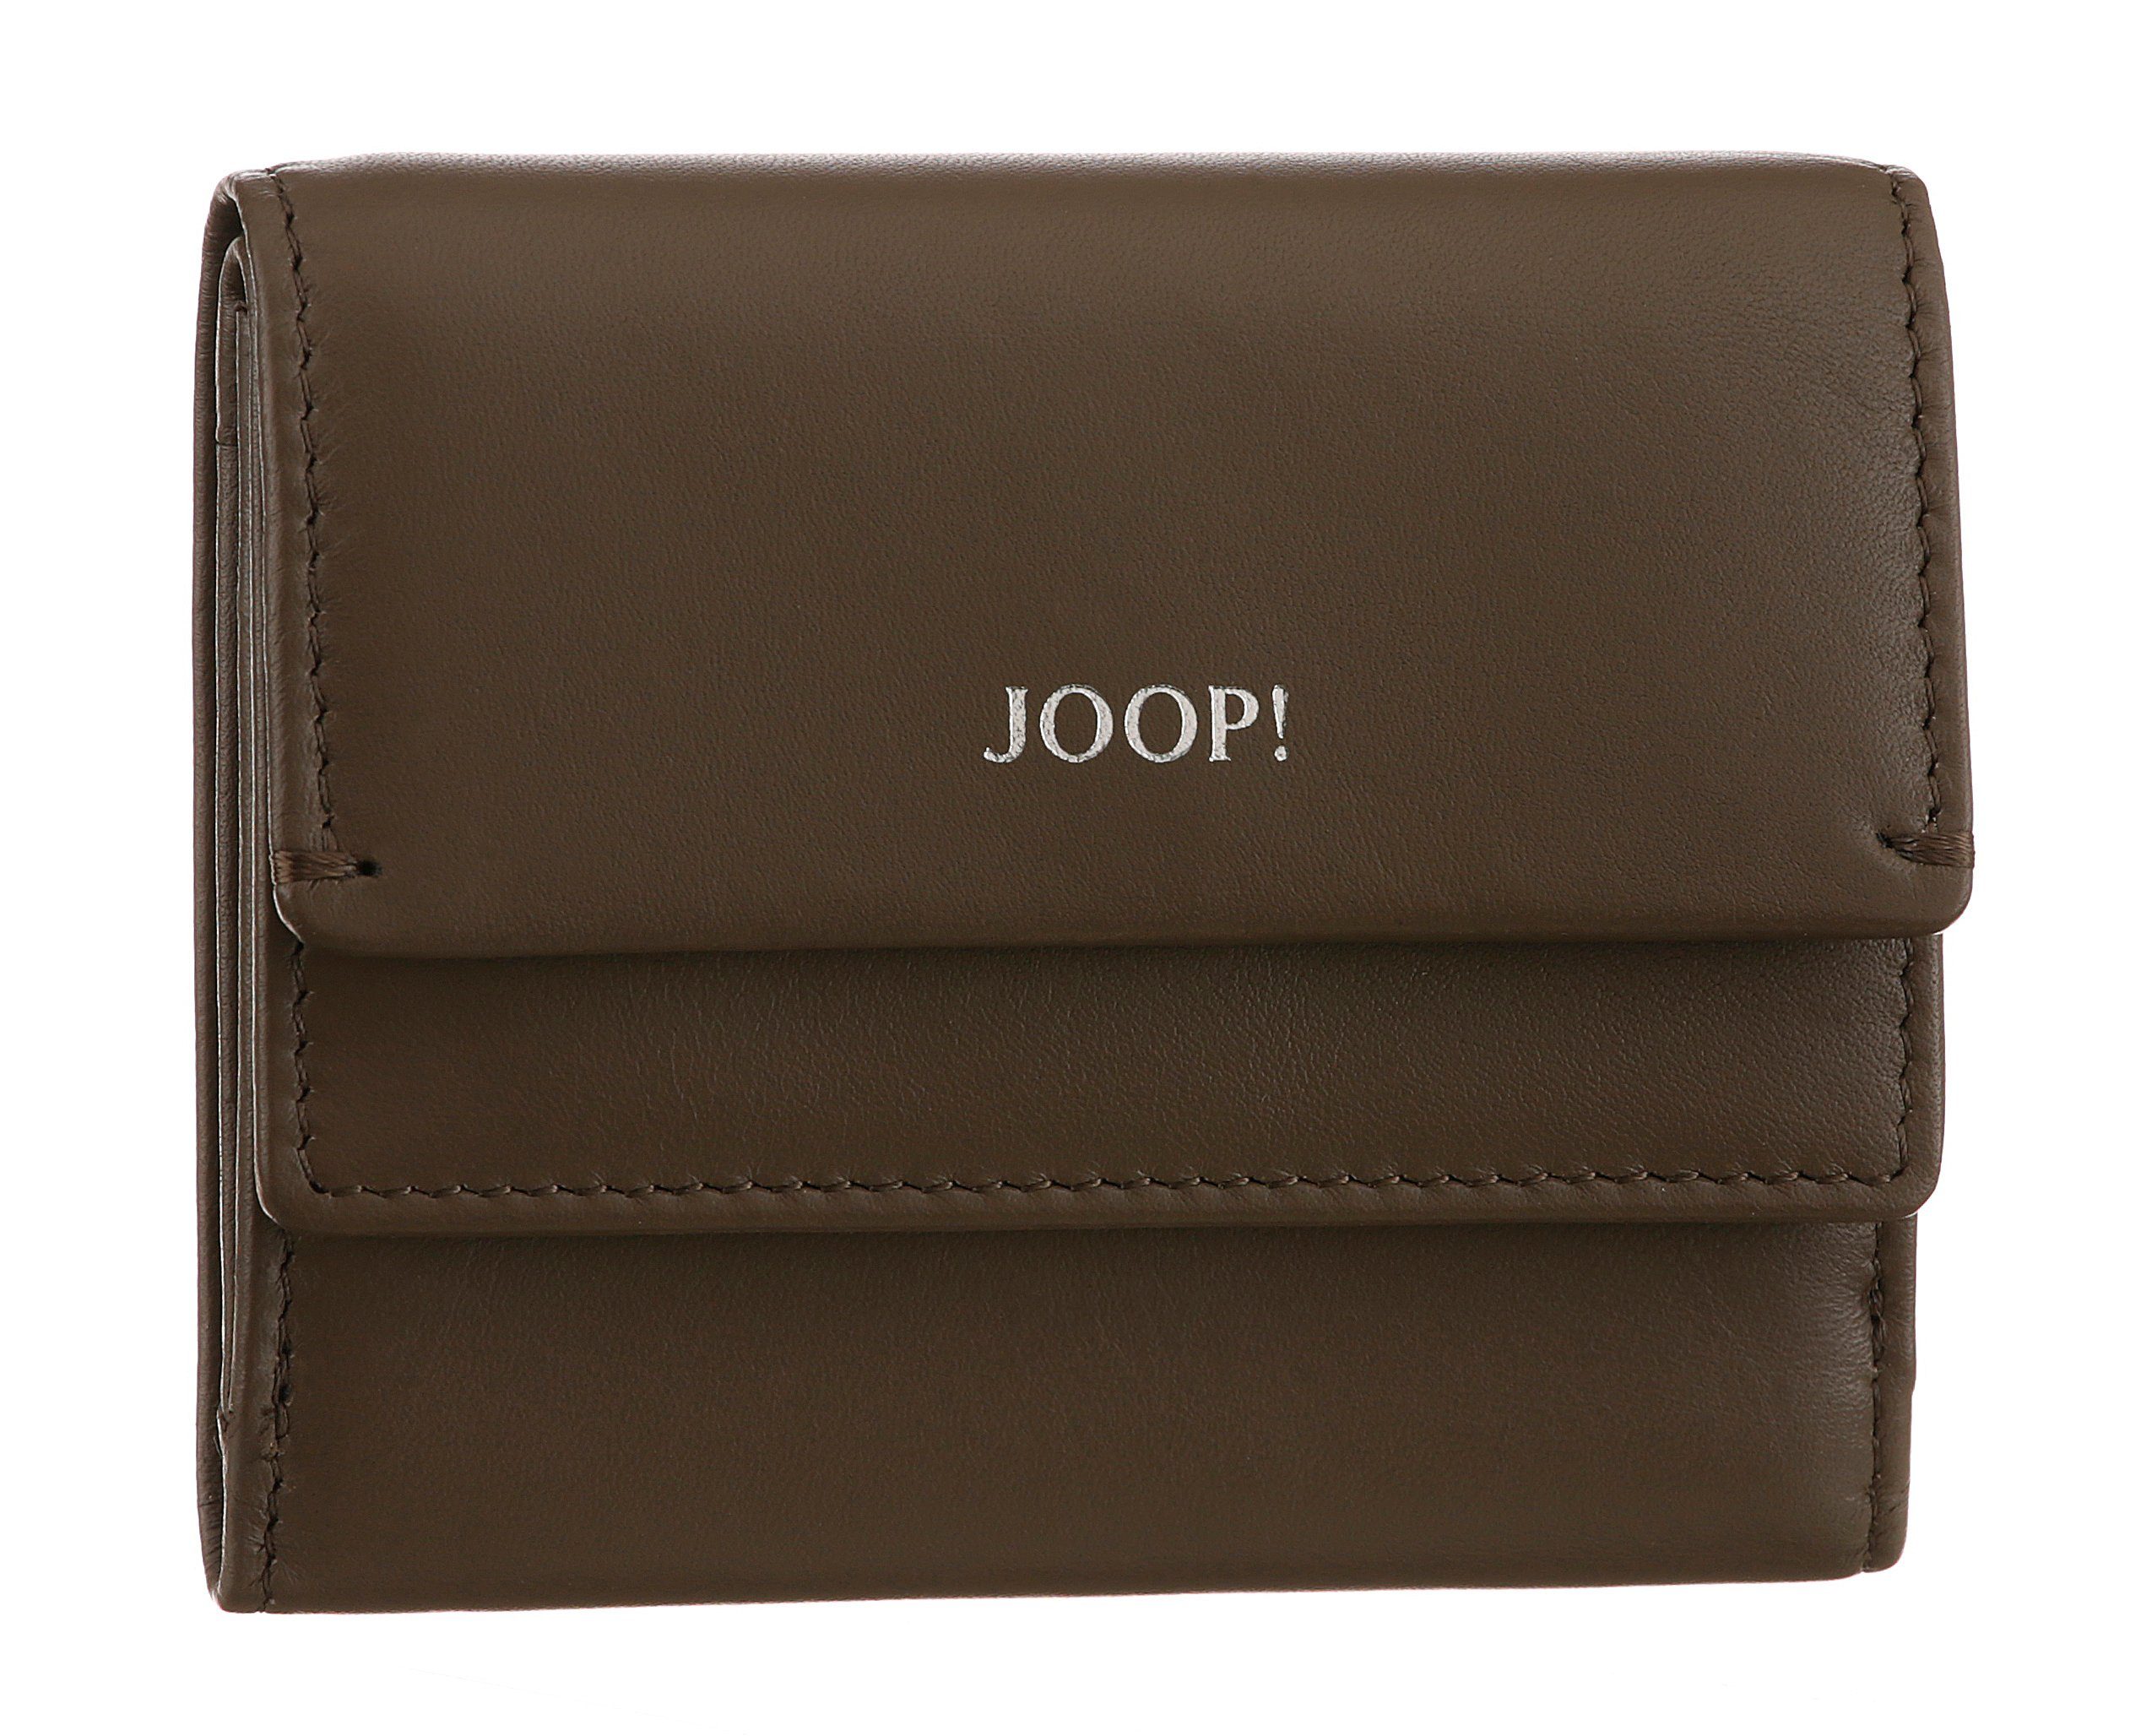 Joop! Geldbörse sofisticato 1.0 lina purse sh5f, in schlichtem Design dunkelbraun